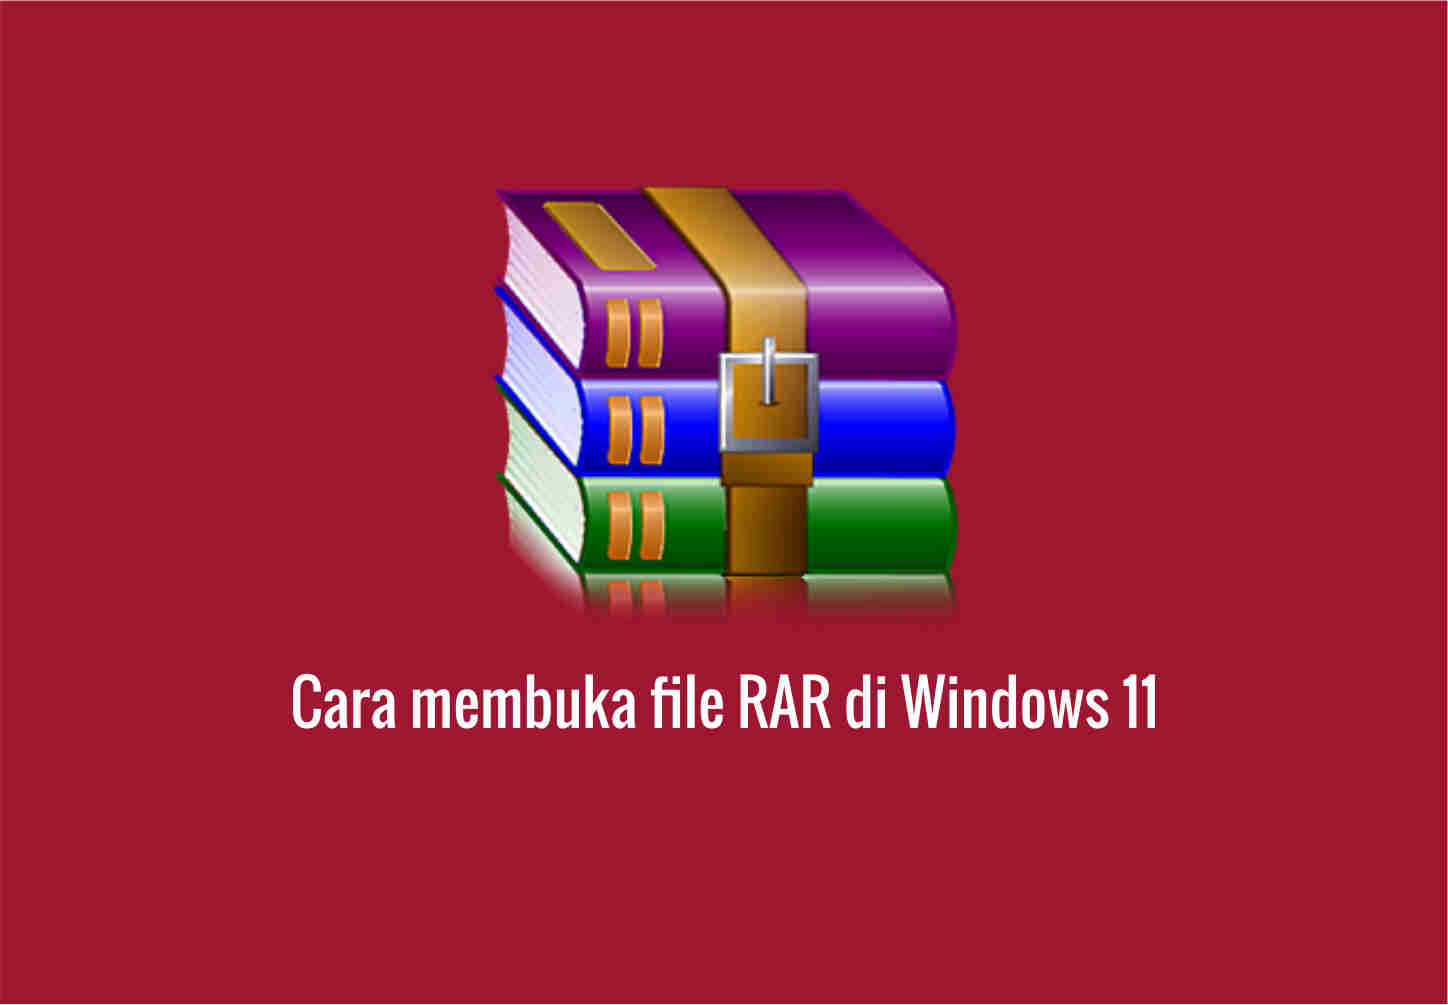 You are currently viewing Cara membuka file RAR di Windows 11